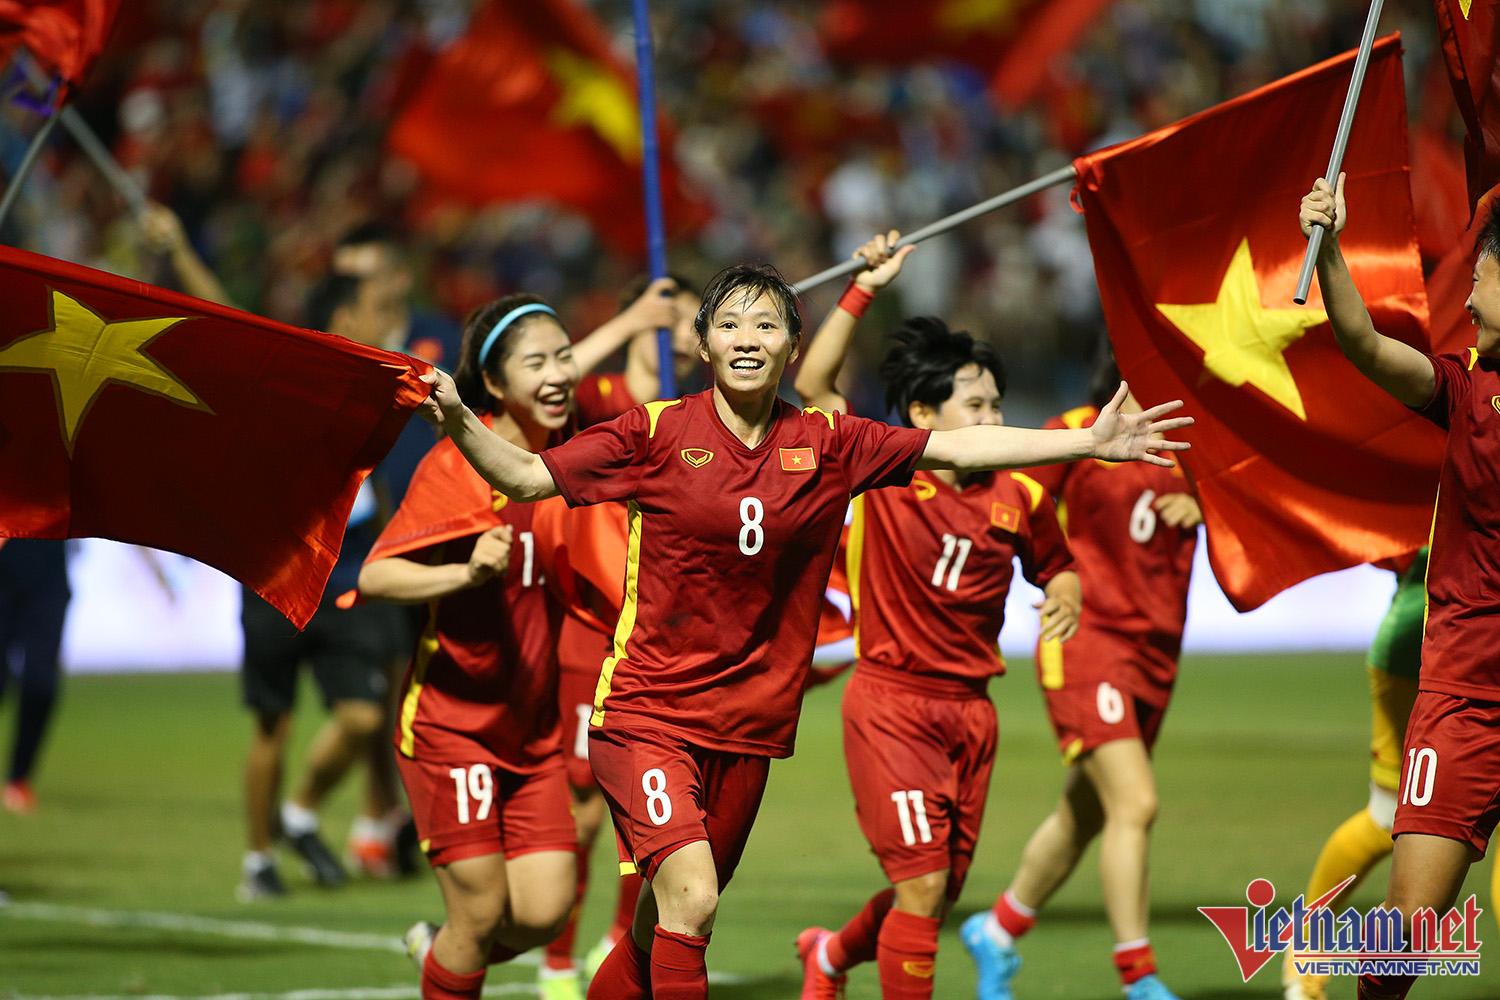 Xúc động hình ảnh cầu thủ nữ Việt Nam cắm cờ Tổ quốc trên bục nhận huy chương - Ảnh 6.